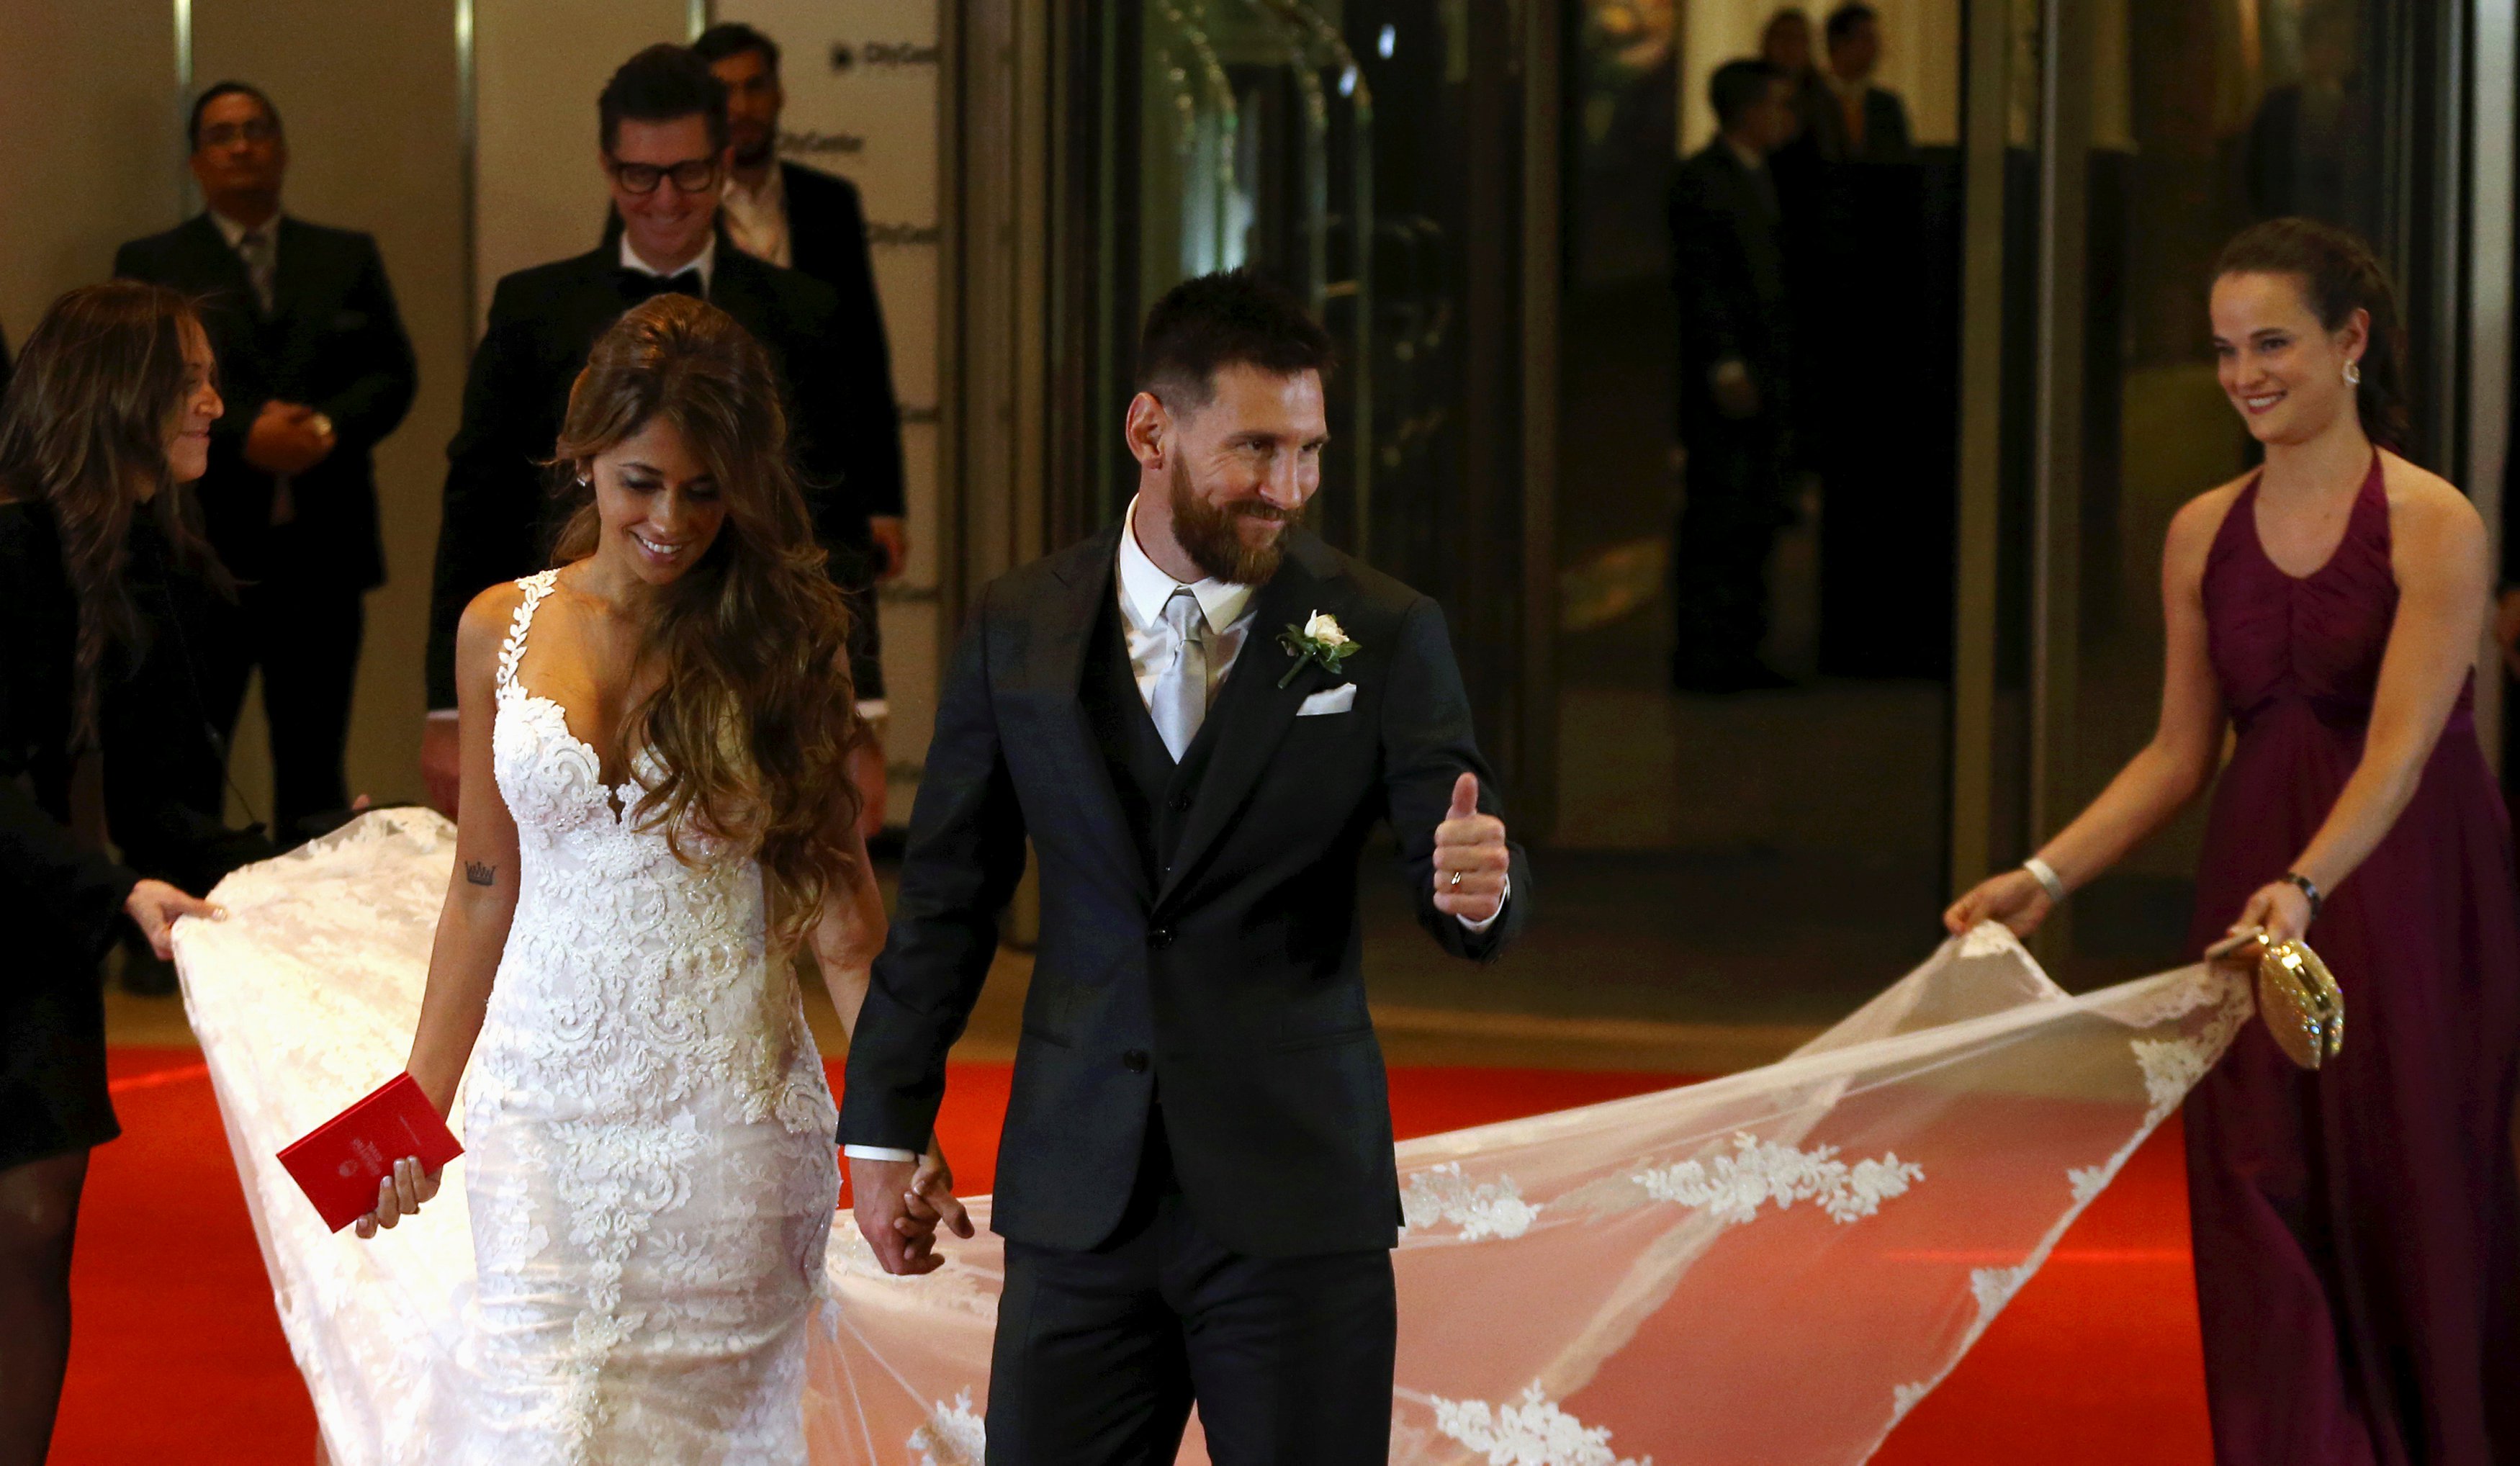 النجم الأرجنتيني ليونيل ميسي يتزوج رسمياً من صديقته أنتونيلا روكوزو